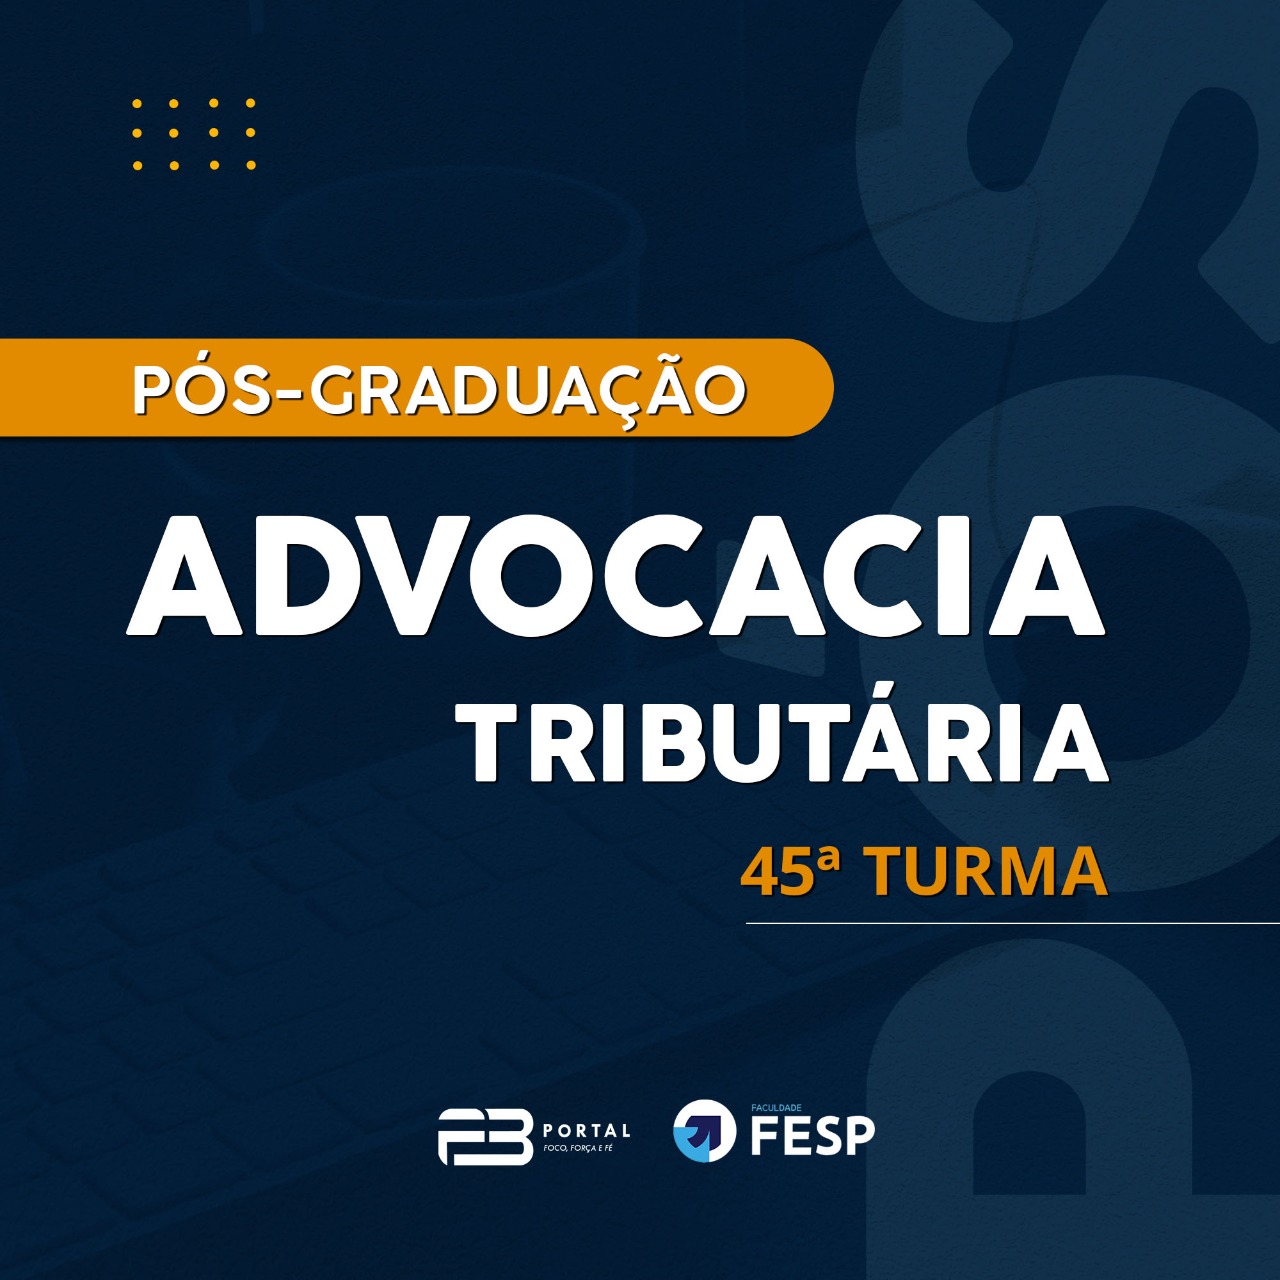 PÓS-GRADUAÇÃO ADVOCACIA TRIBUTÁRIA 45ª TURMA ONLINE